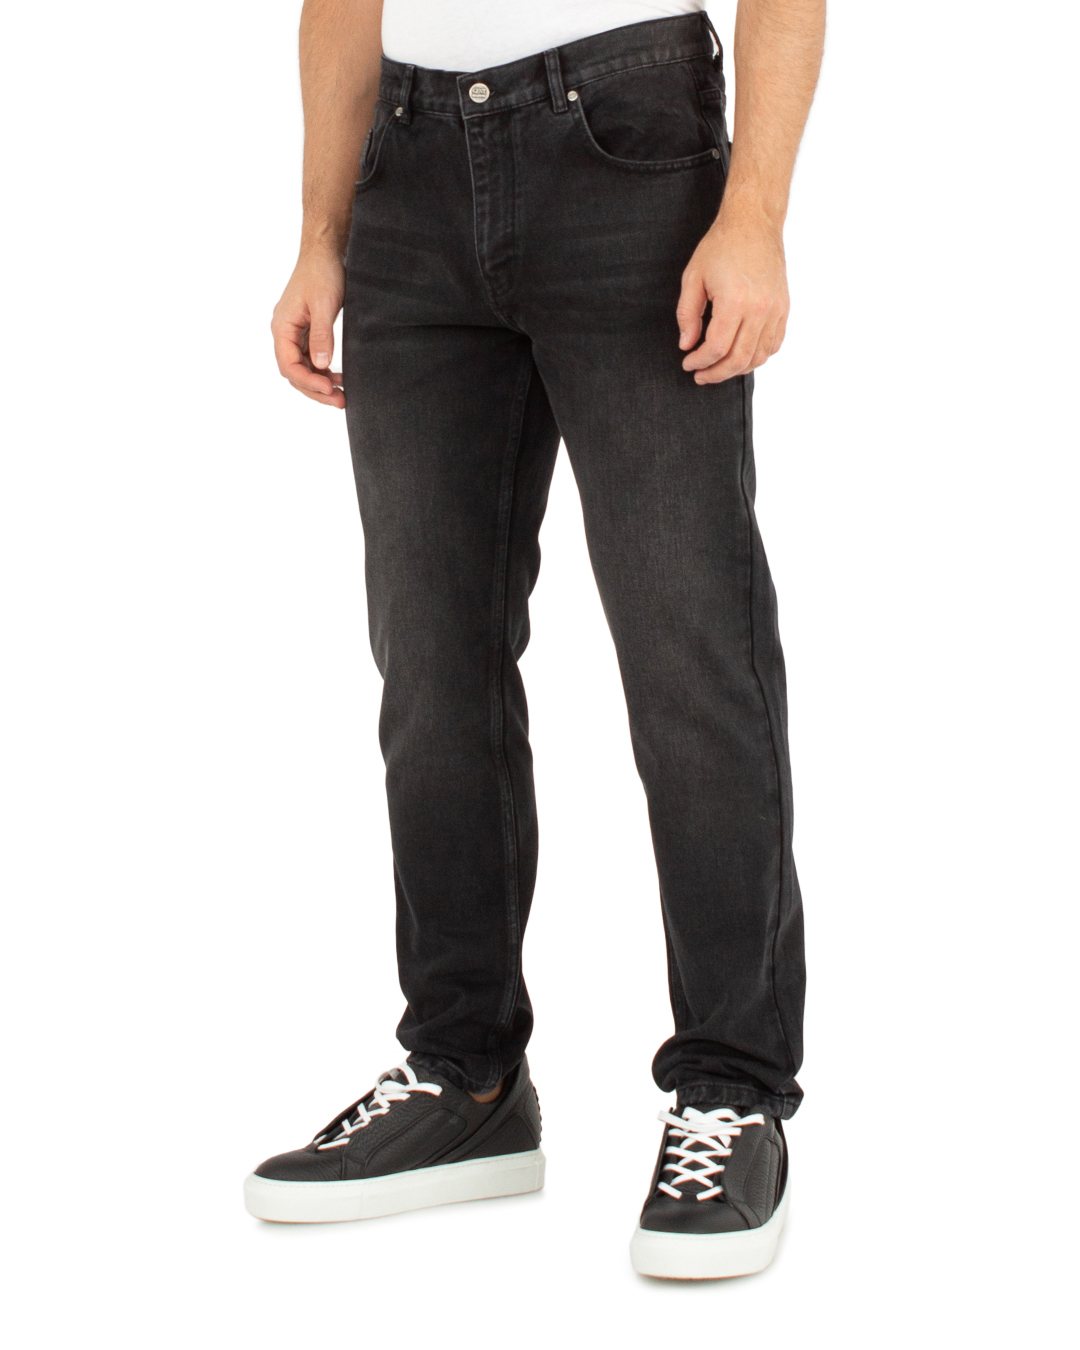 джинсы Gent Manners 01_02_D_BLV серый 34, размер 34 - фото 3